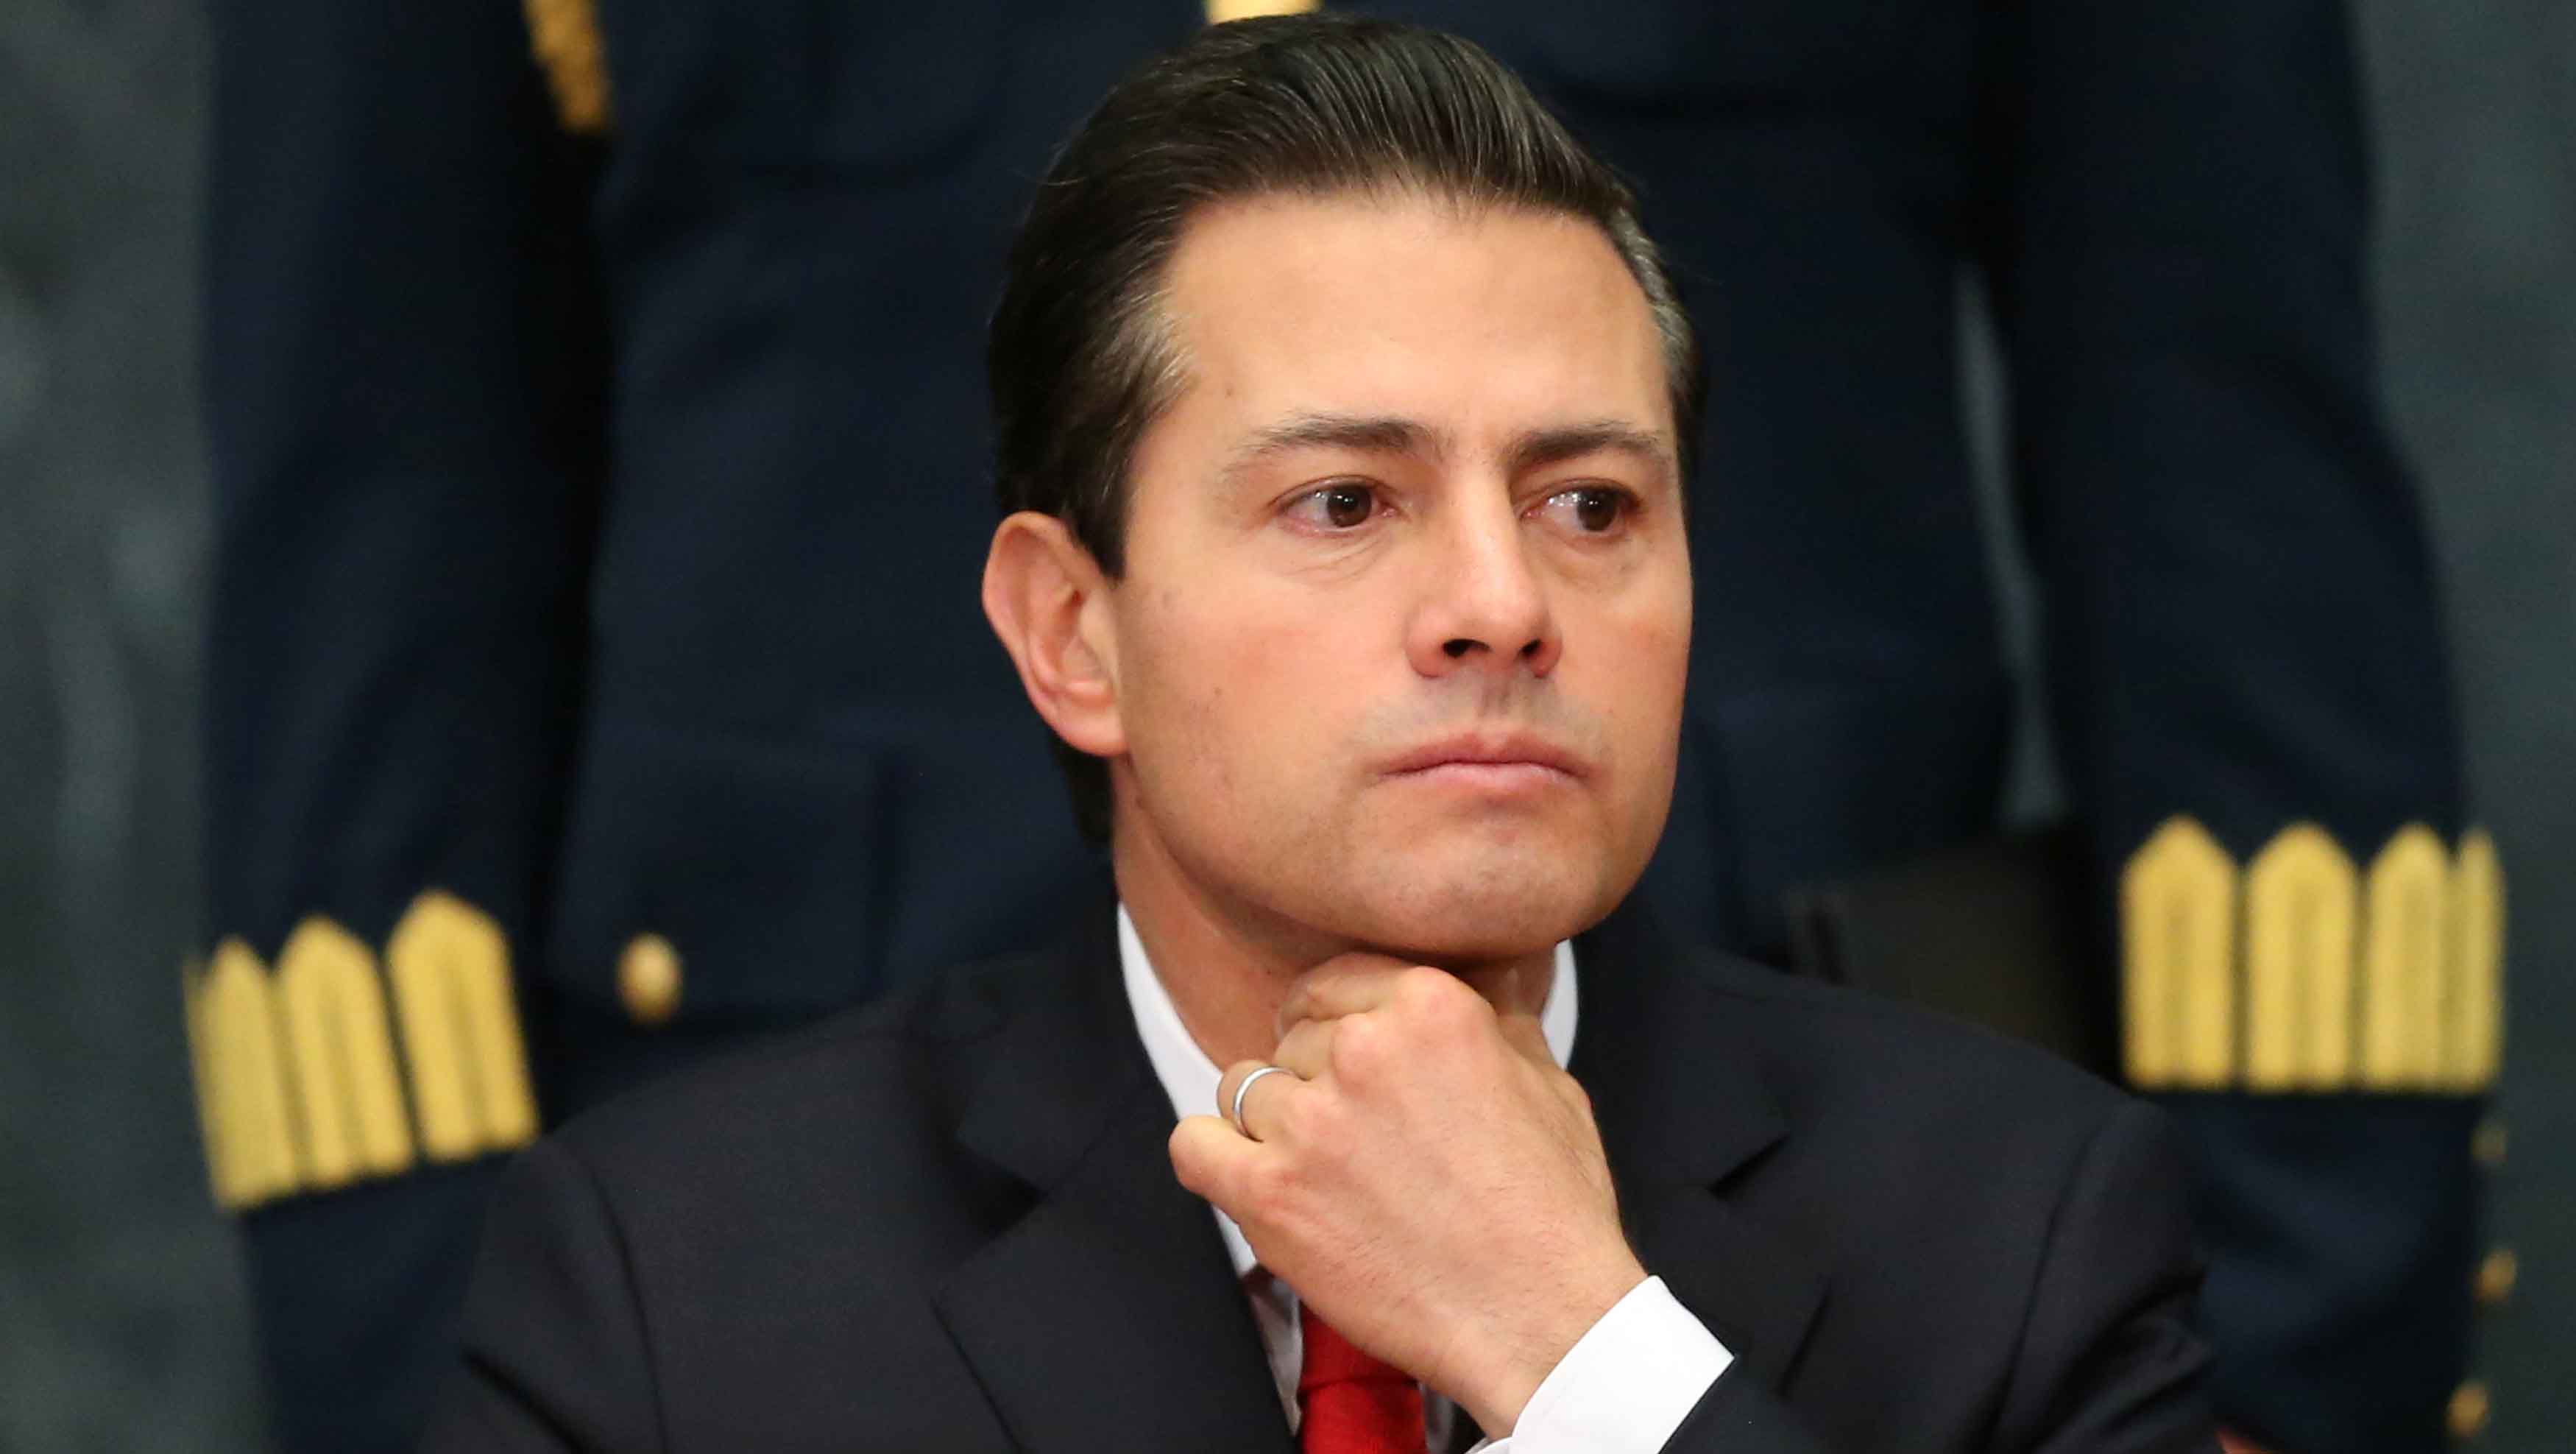 La conversación entre Peña Nieto y Trump fue respetuosa, “como la que se da entre jefes de Estado”, dijo el vocero del Gobierno mexicano.